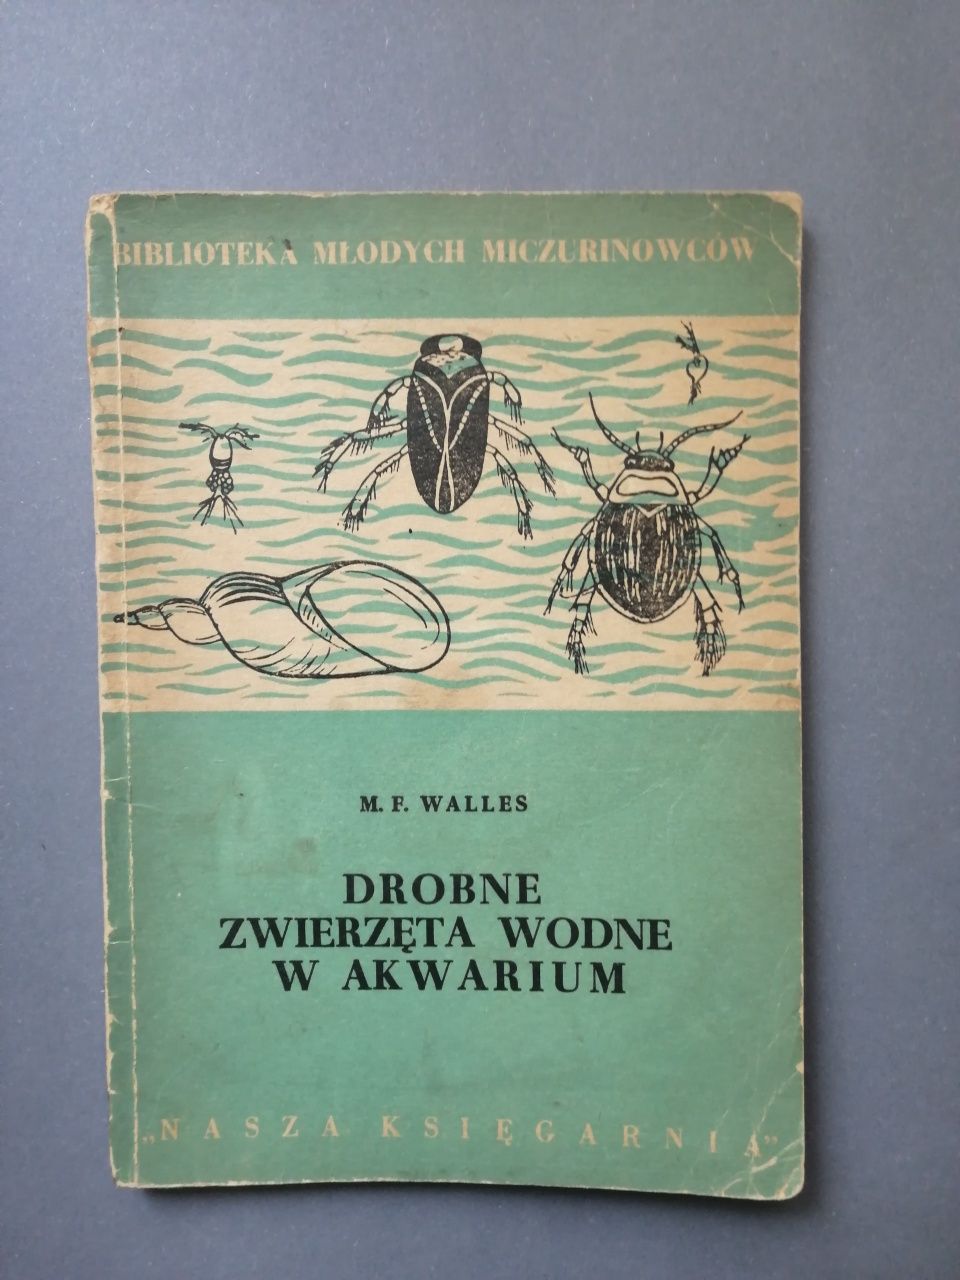 Akwarystyka drobne zwierzęta wodne w akwarium 1956 Walles kompendium